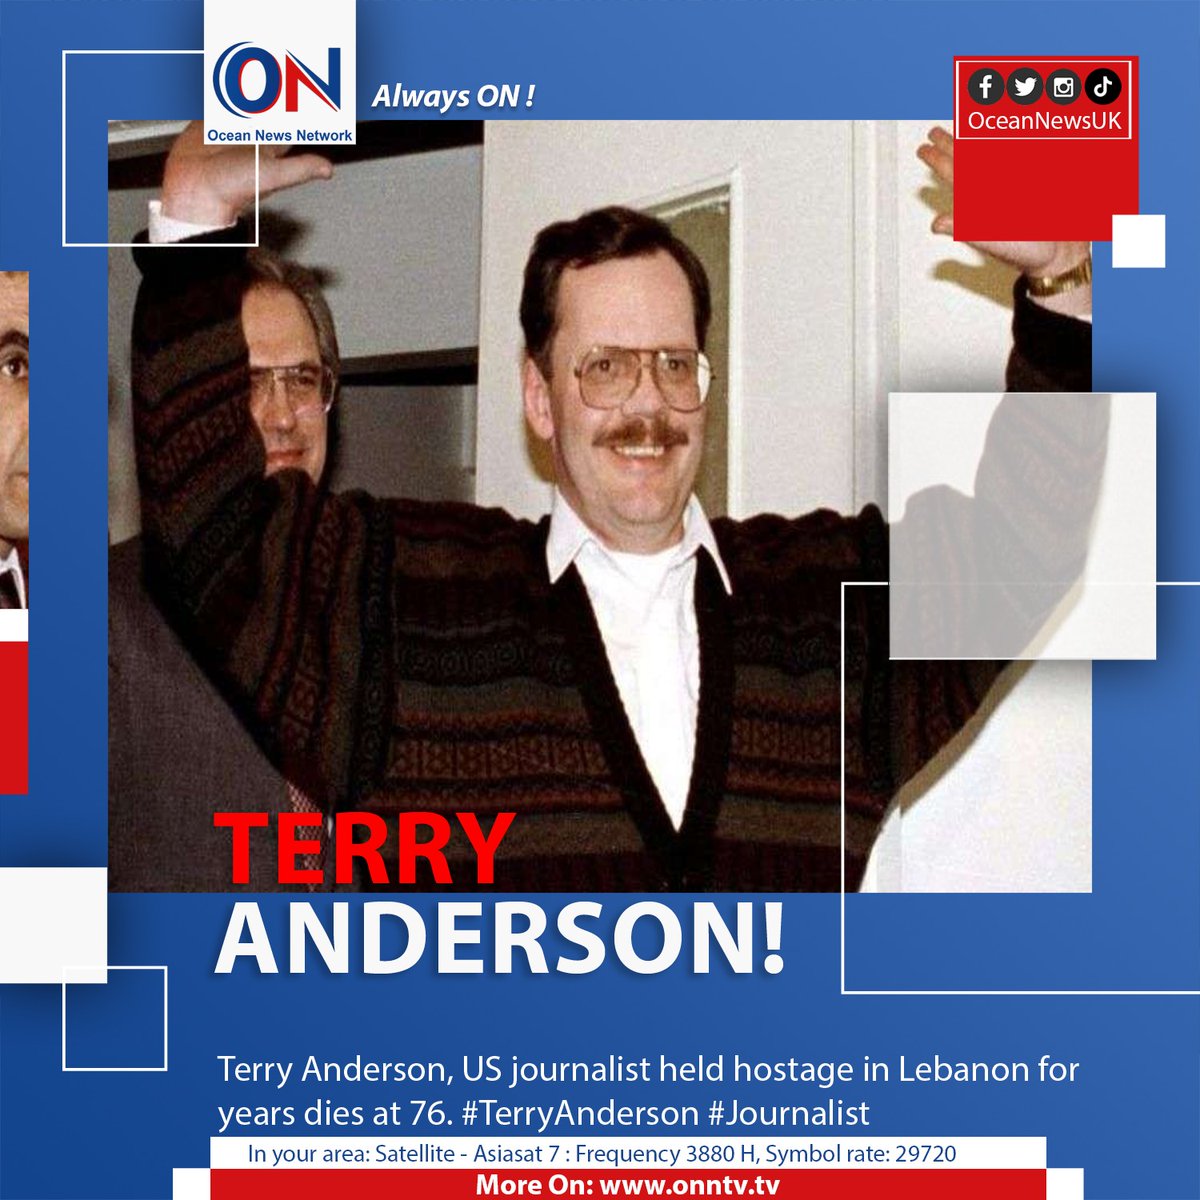 Terry Anderson, US journalist held hostage in Lebanon for years dies at 76. #TerryAnderson #Journalist

#OceanNewsUK #UK #Ocean #breaking #latest #London

More On: oceannewsuk.com

📺 Satellite - Asiasat7: Frequency 3880 H, Symbol Rate: 29720